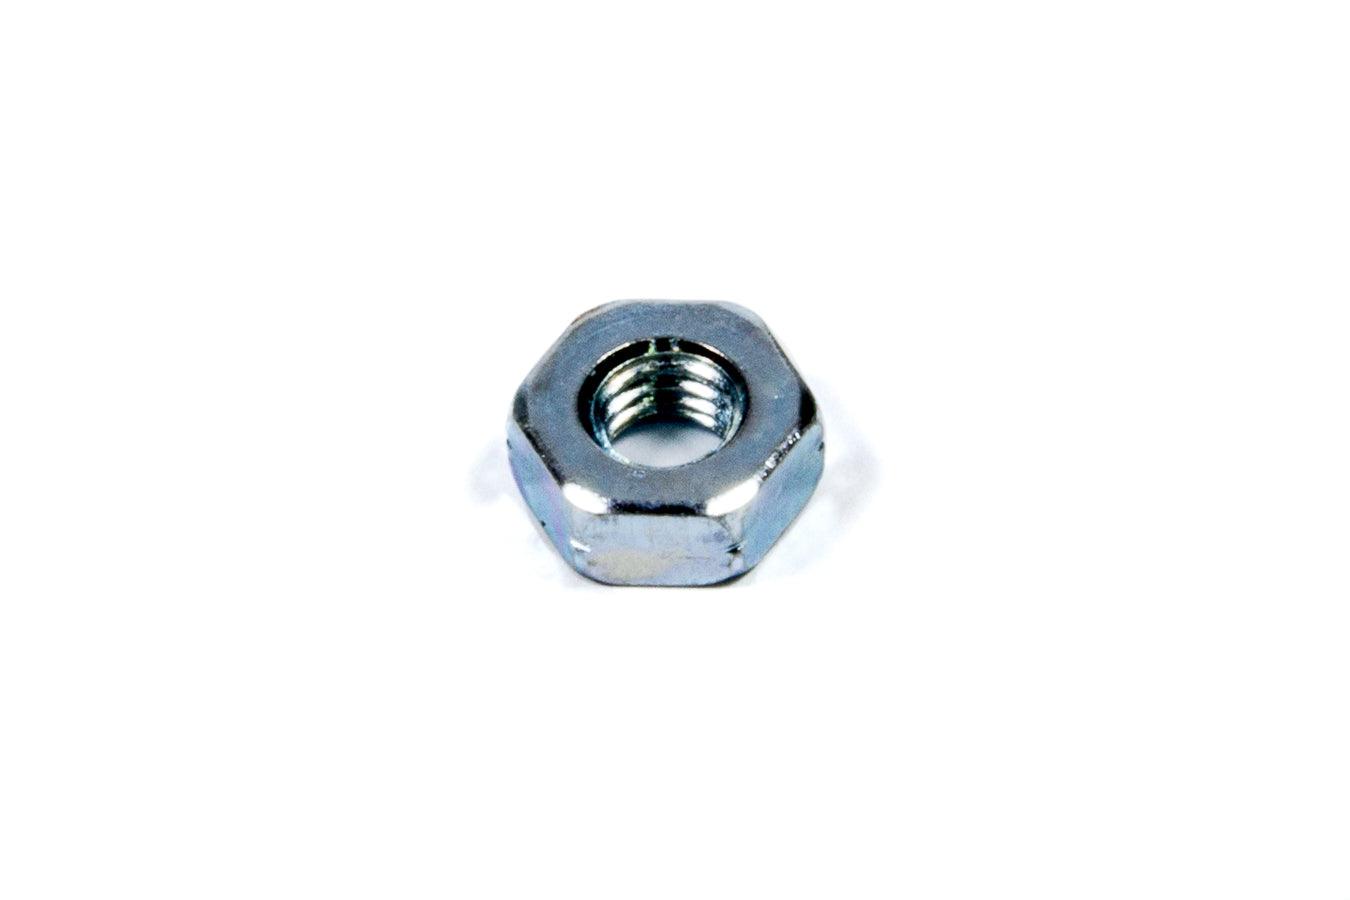 Jam Nut 3/16-32 Steel LH 10-32 - Burlile Performance Products